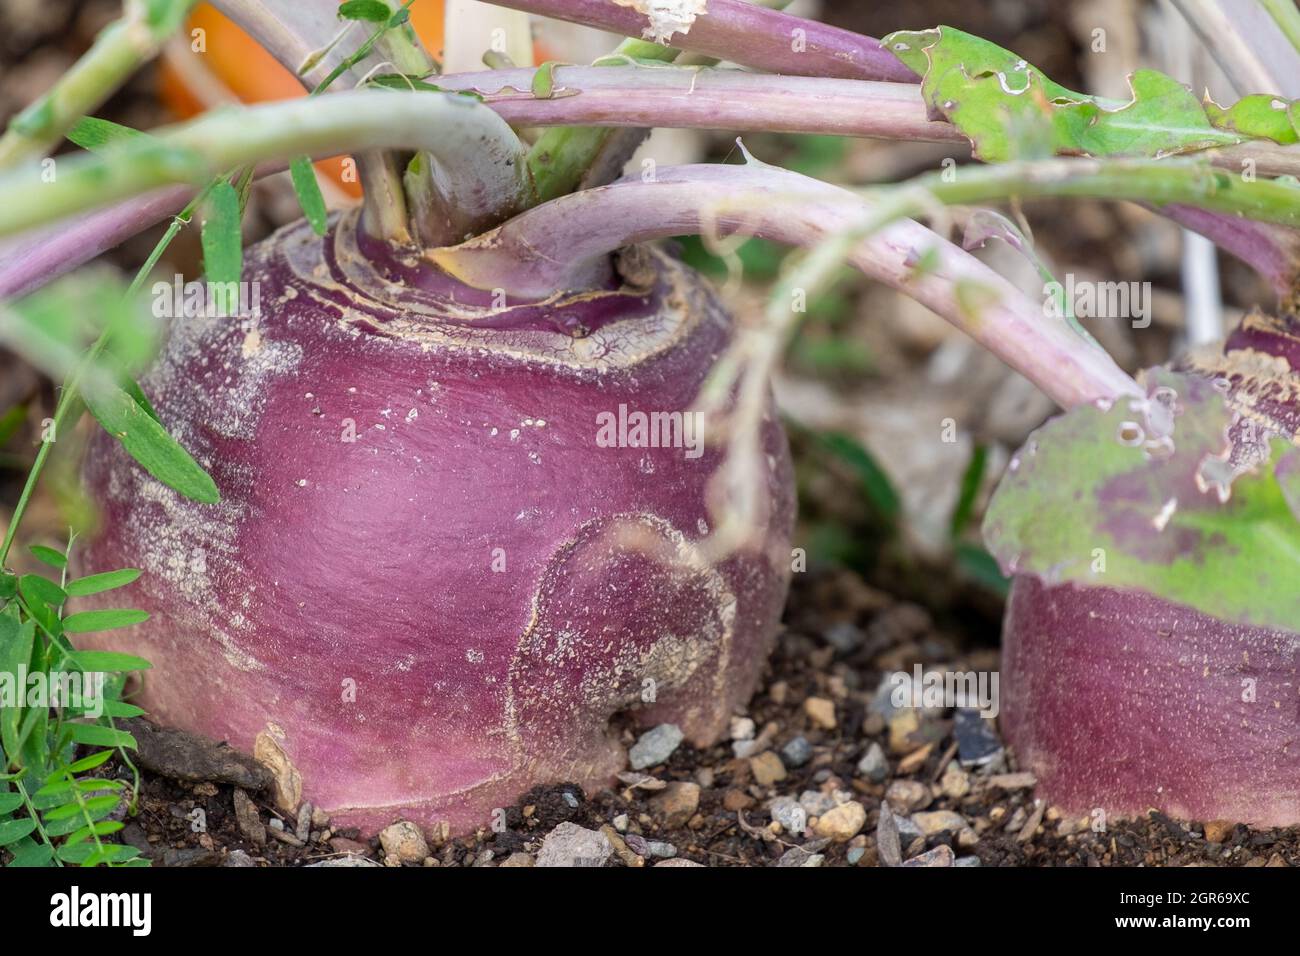 Una grande rapa rotonda organica di colore viola o rutabaga radice vegetale che cresce in un giardino rialzato letto. Il suolo è scuro e ricco. Foto Stock